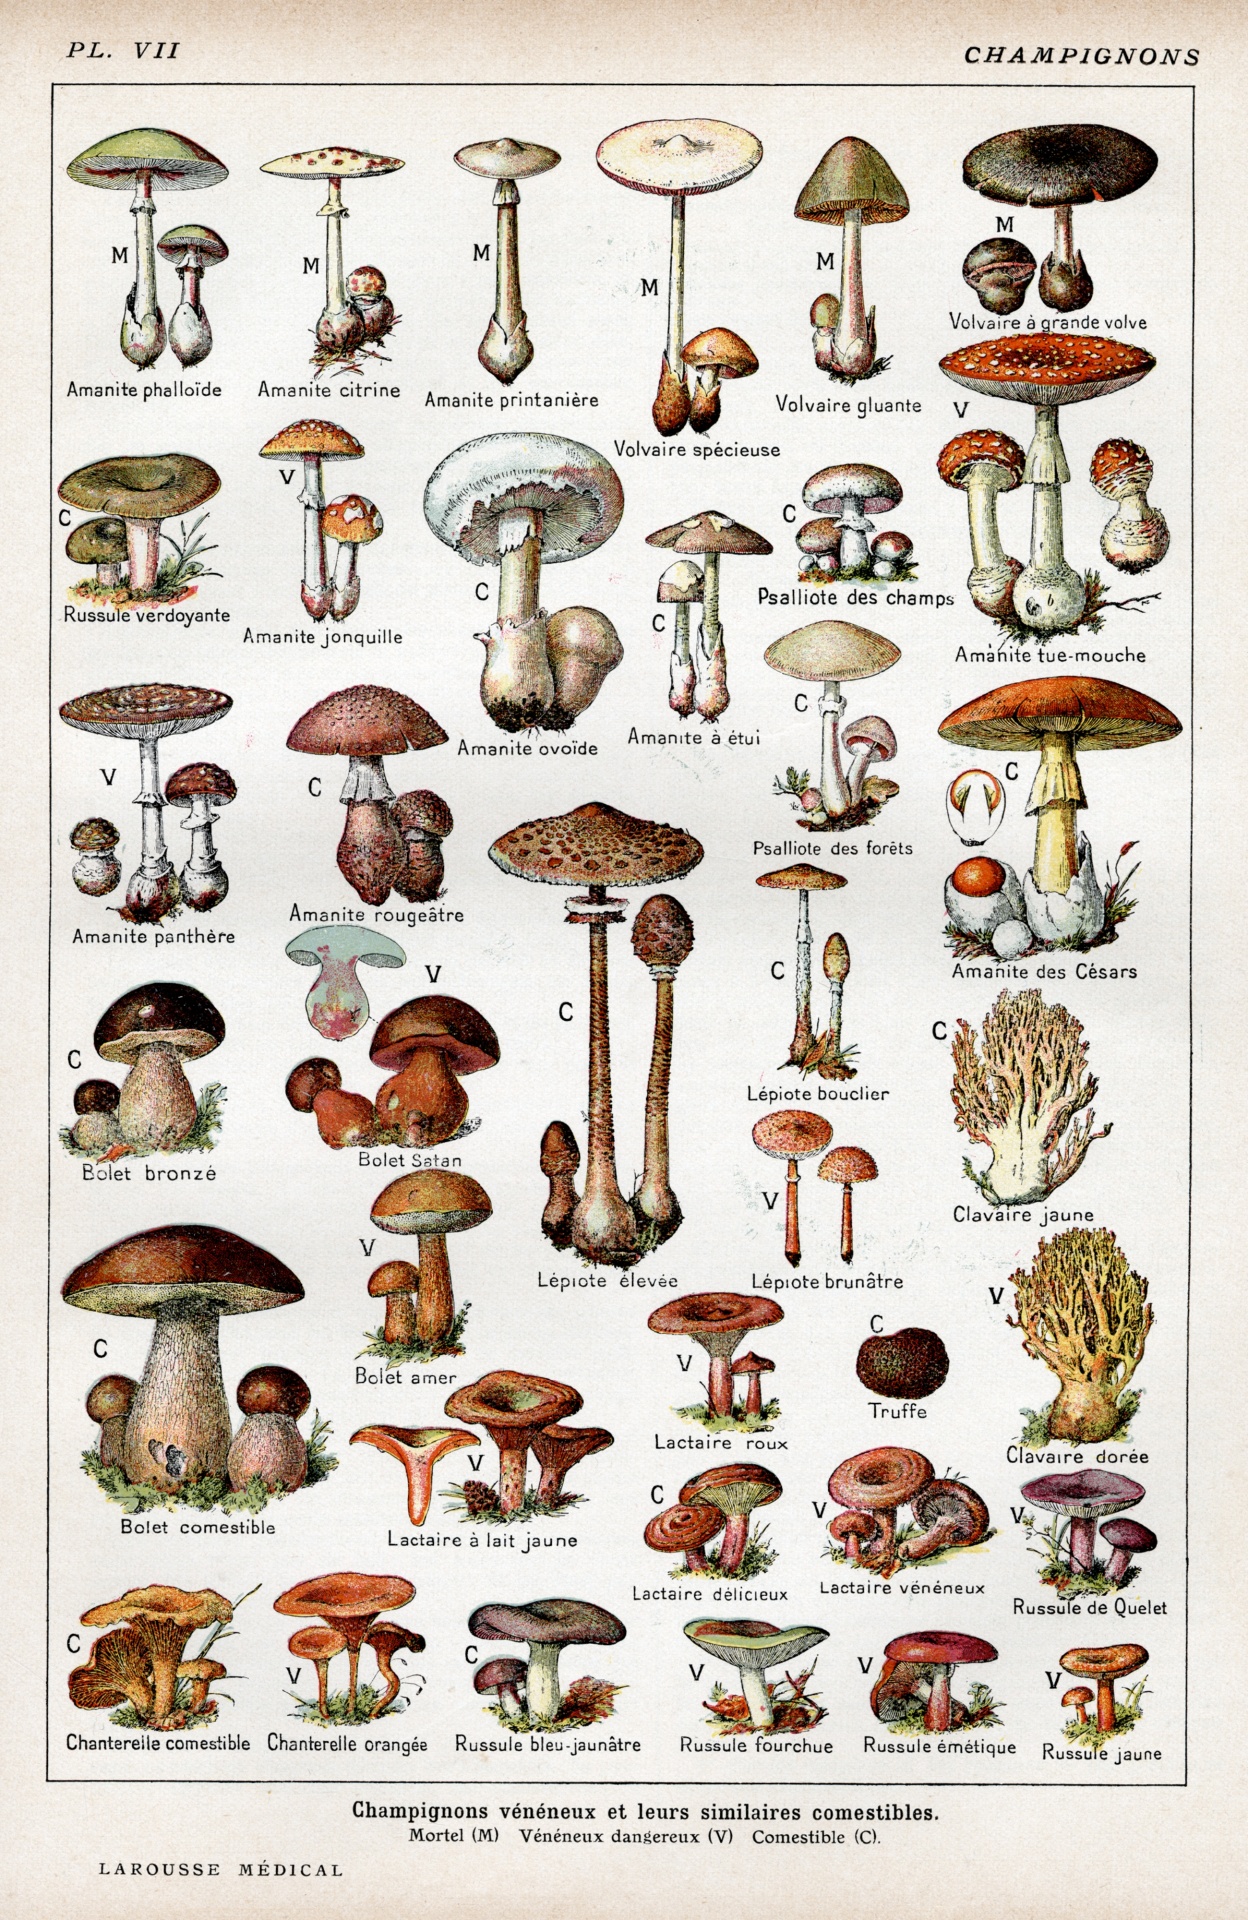 Mushrooms mushroom autumn vintage old 1900 century art hand painted antique art deco decorative illustration art nouvelle nouvelle colorful colorful watercolor artistic clipart retro antique graphic design vector